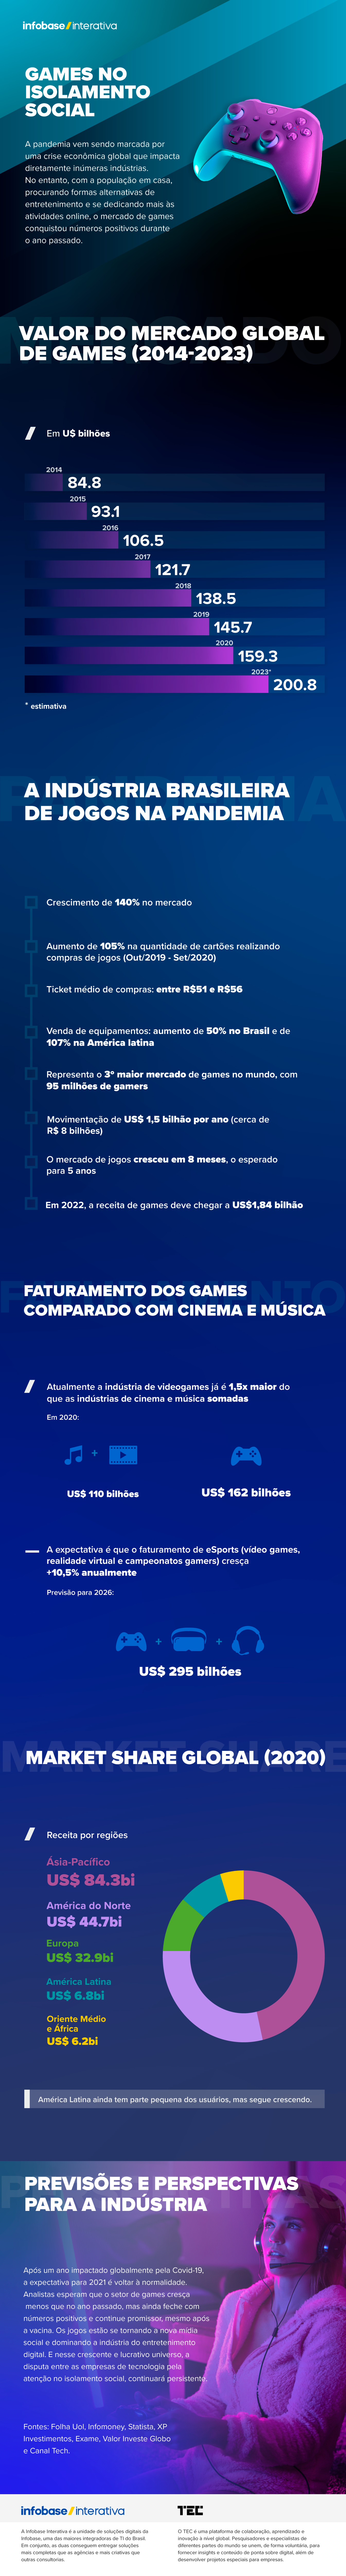 Jaw Games: nova plataforma de streaming de jogos chega ao Brasil com mais  de 500 títulos 